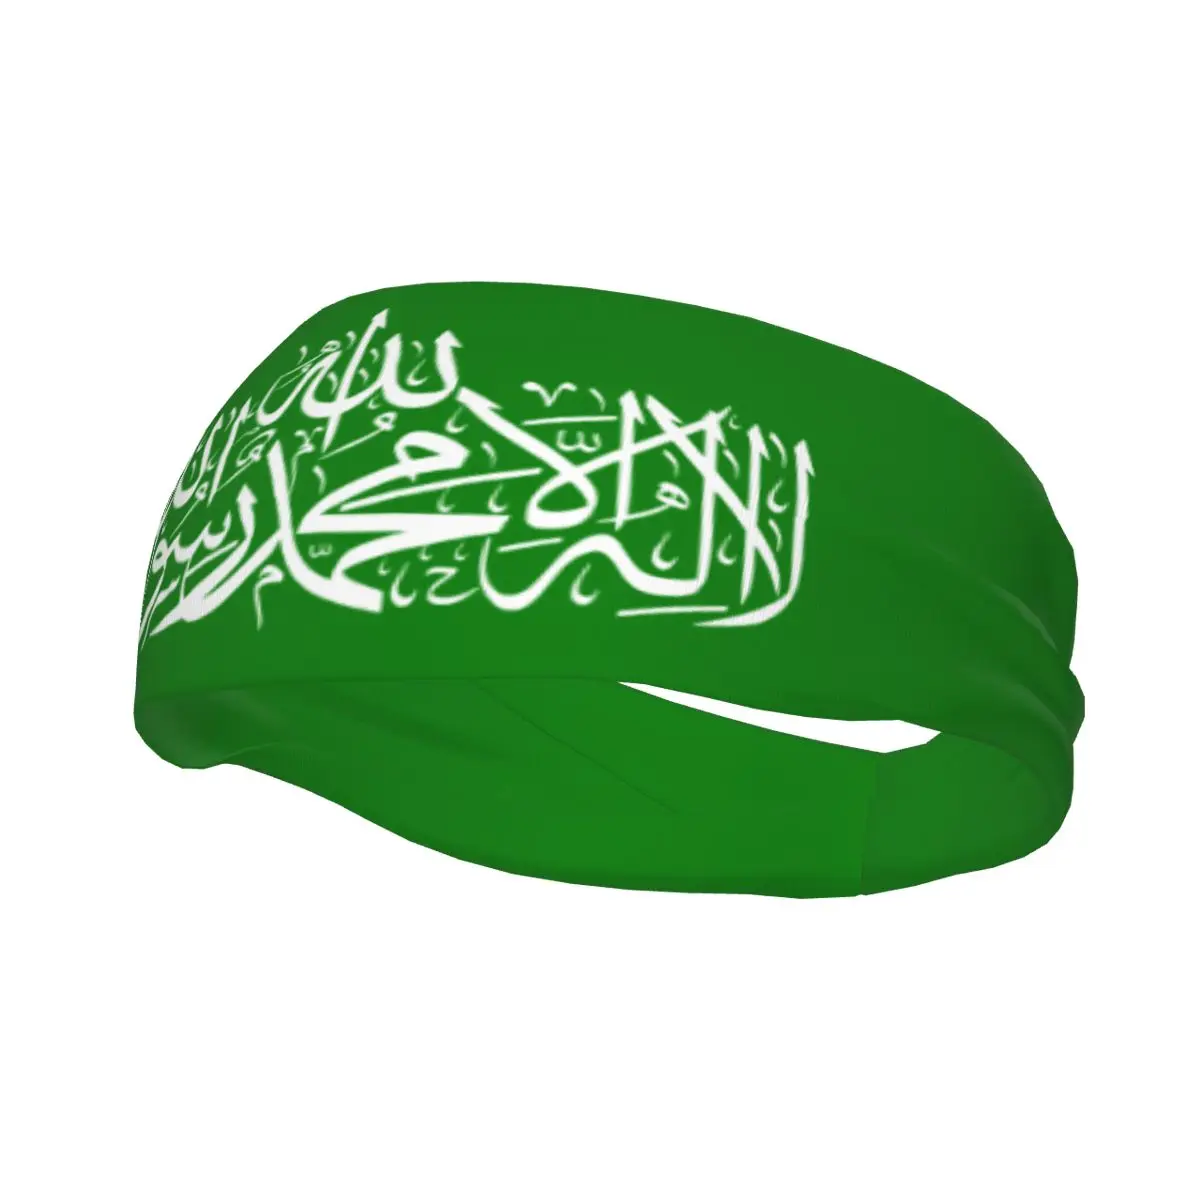 

Повязка на голову для мужчин и женщин, Арабская наклейка на голову, нескользящая, впитывающая влагу, для тренировок